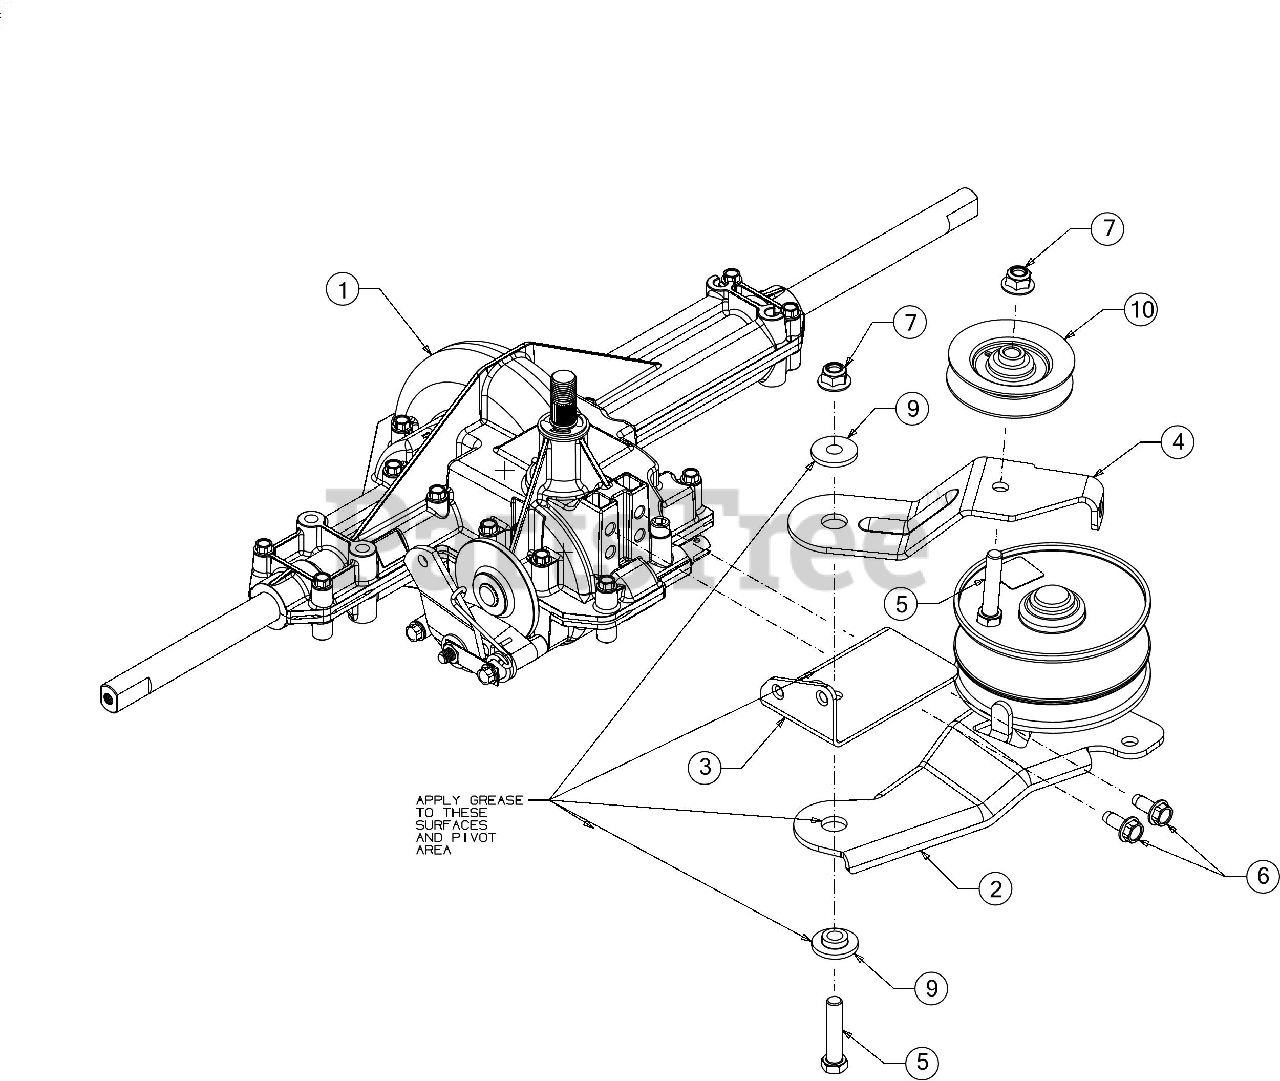 Troy-bilt Mower Parts Diagram